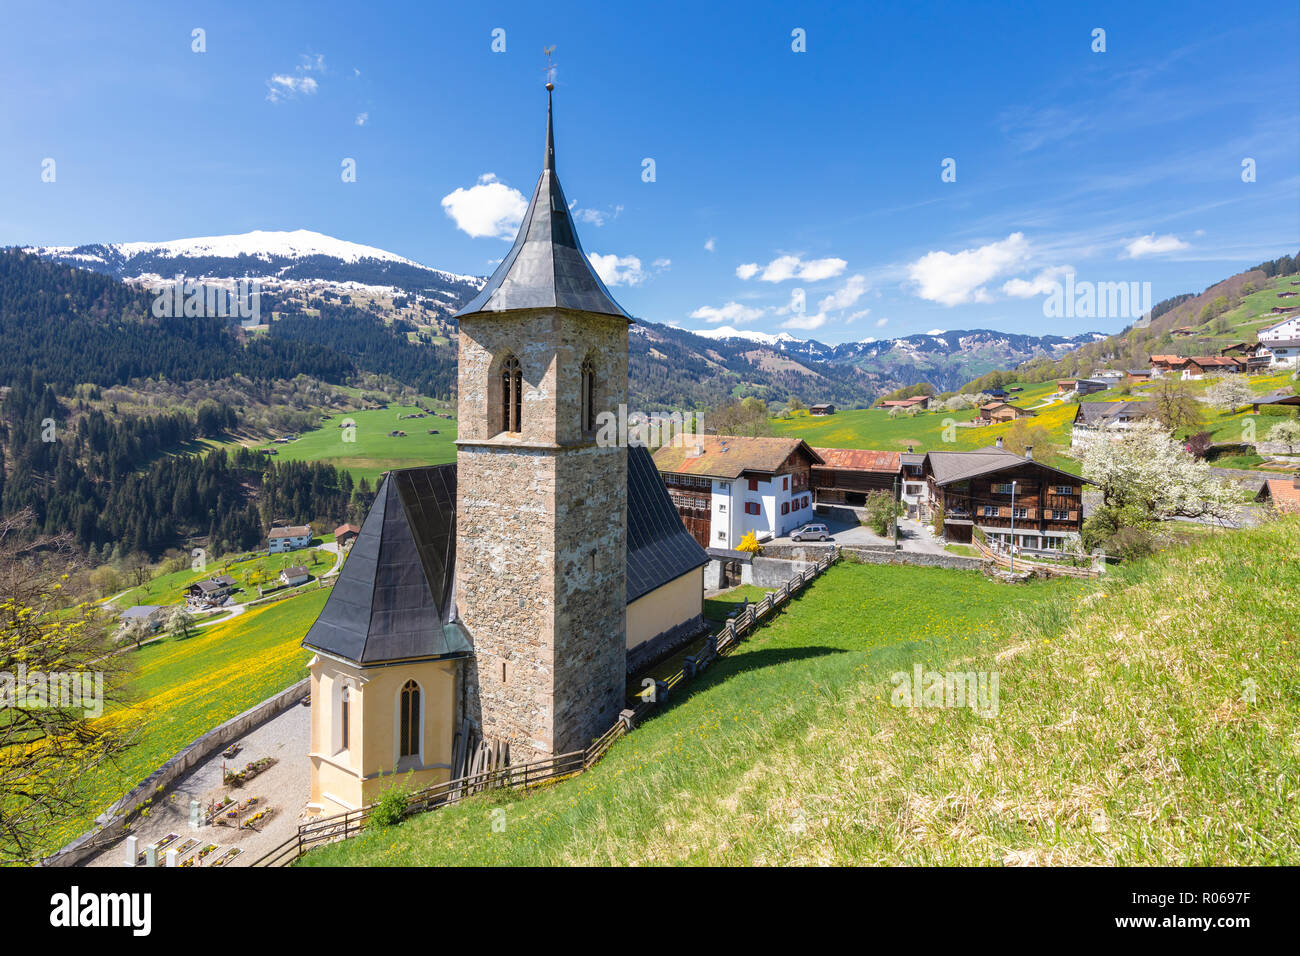 Church of Luzein, Prattigau-Davos region, Canton of Graubunden, Switzerland, Europe Stock Photo